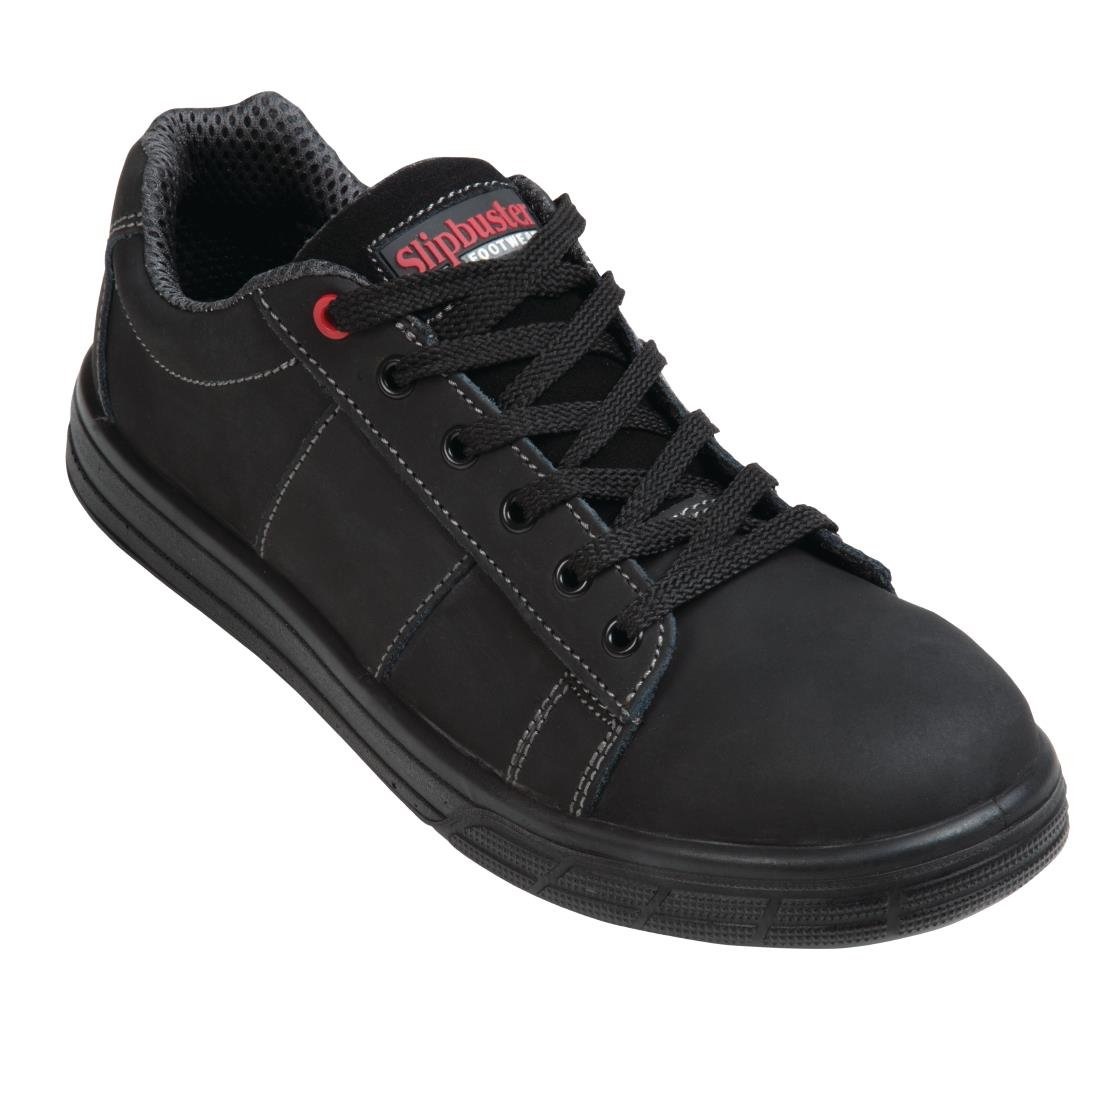 OUTLET - Chaussures de sécurité - Noir - Modèle sportif - Antidérapant - Nez en acier - Disponible jusqu'à la taille 46